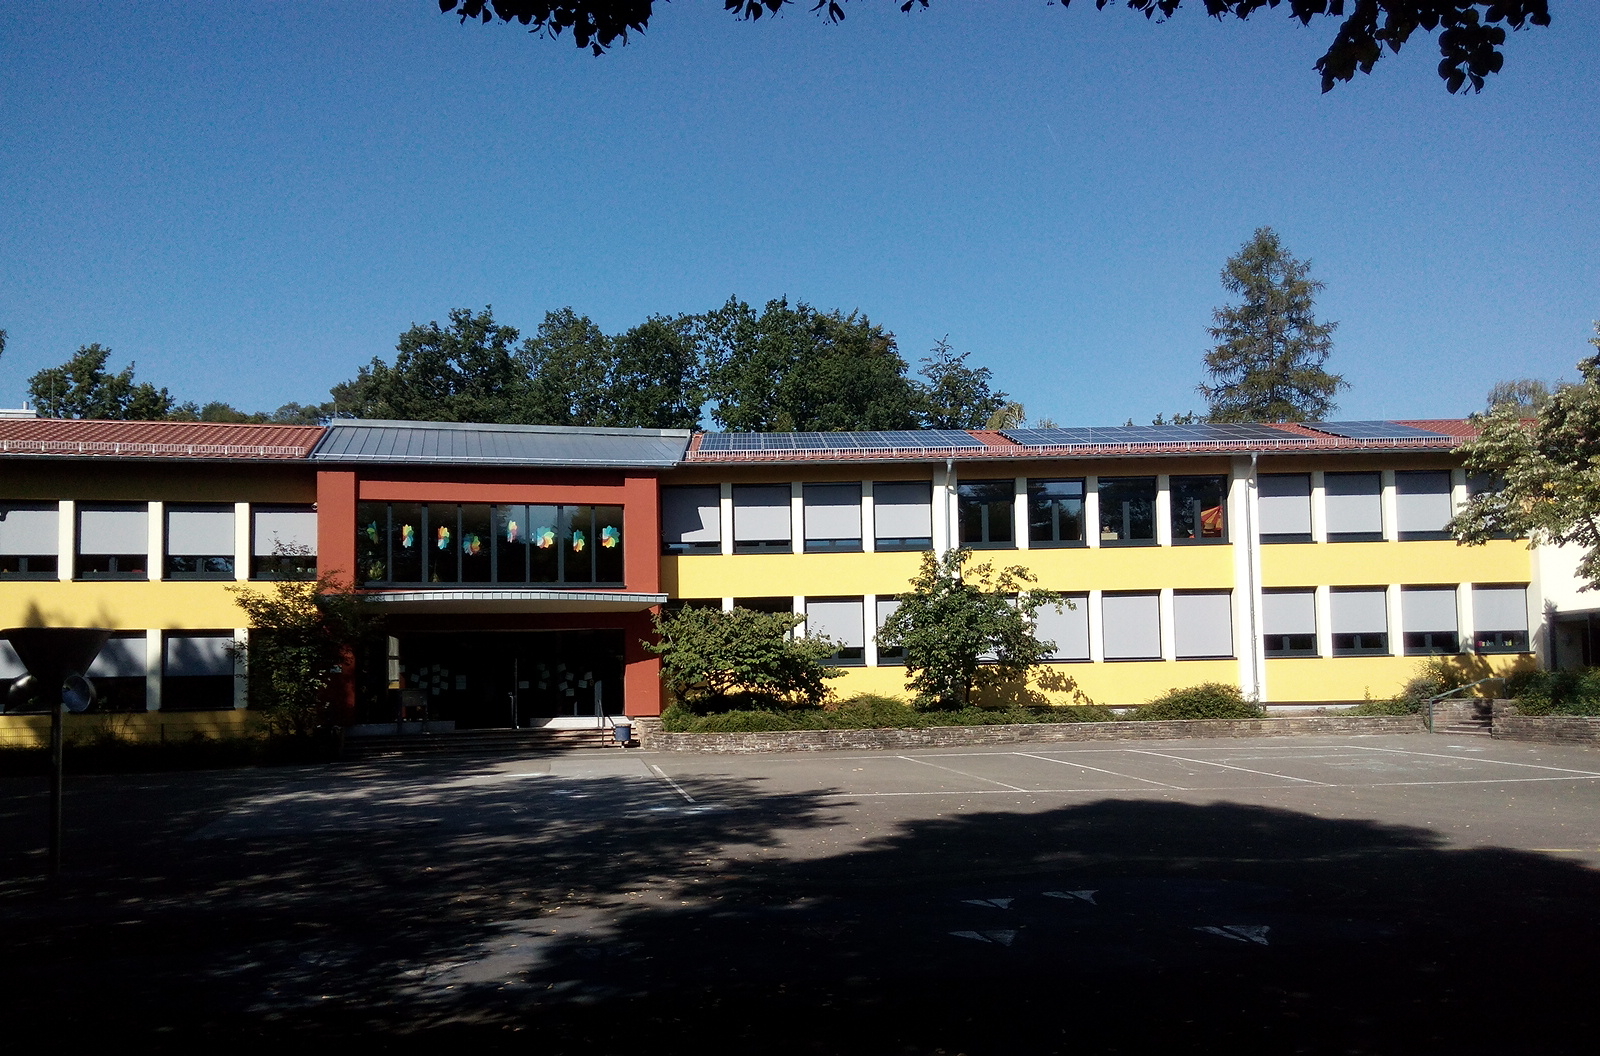 Gebäude Grundschule Stresemann mit PV-Modulen auf den Dachflächen